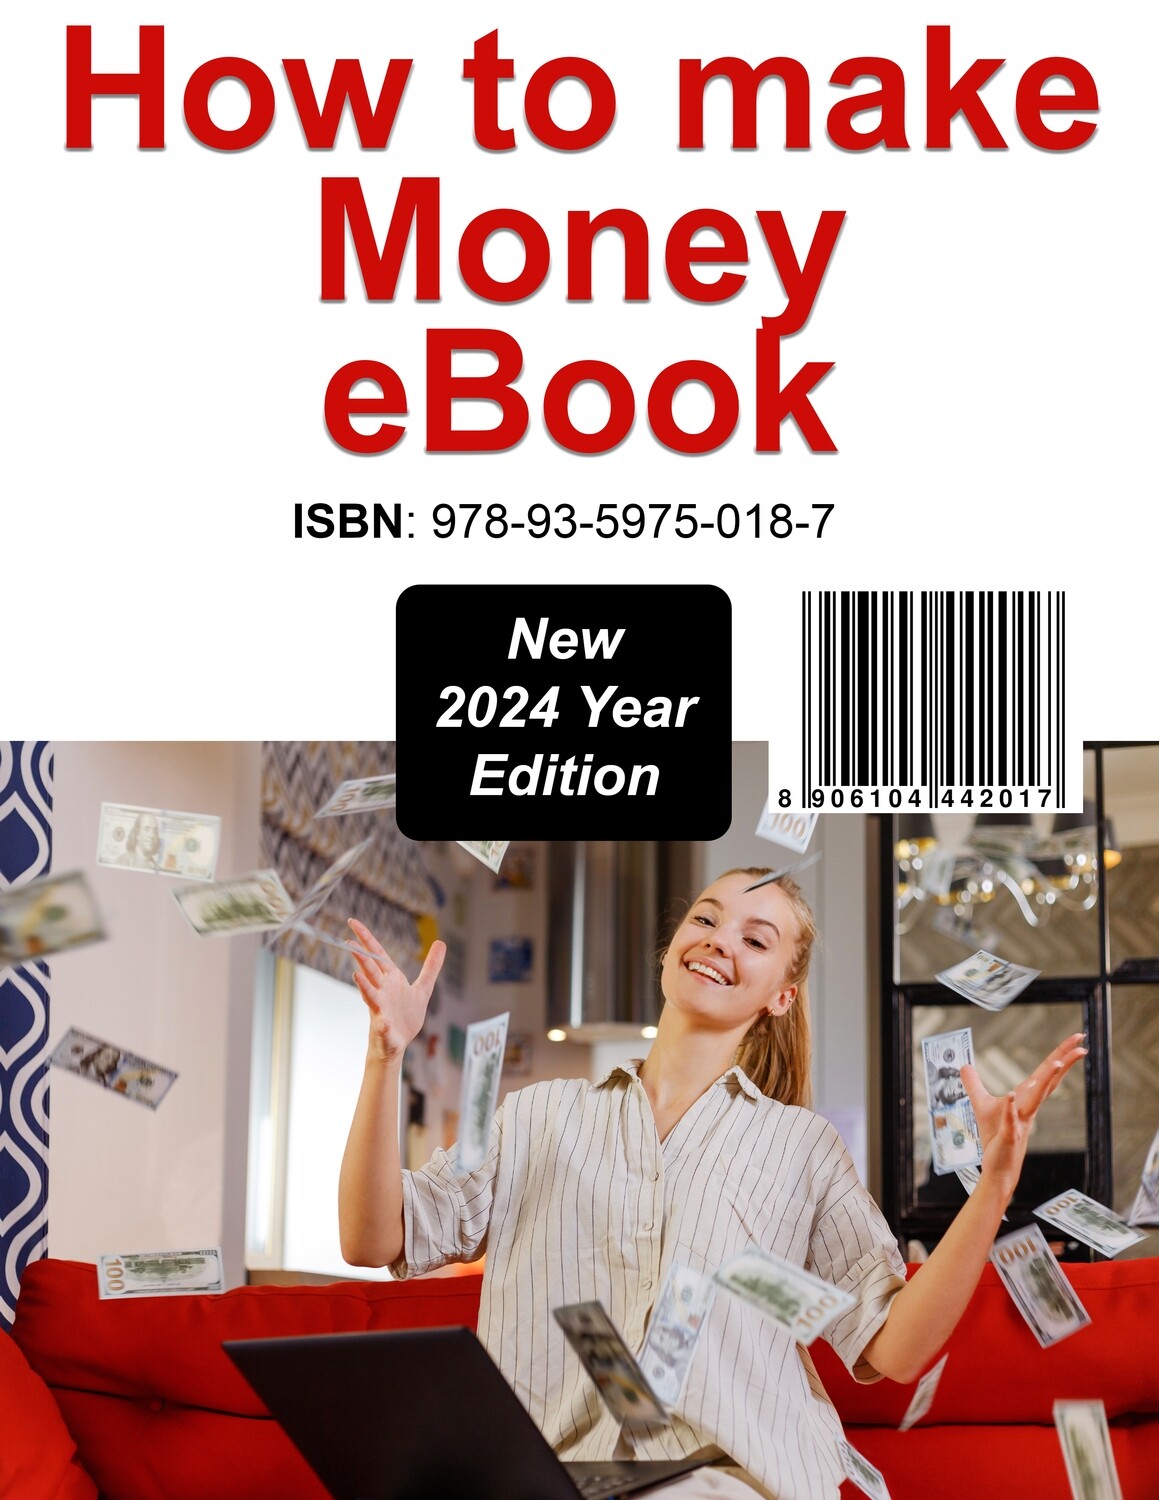 How to make Money eBook